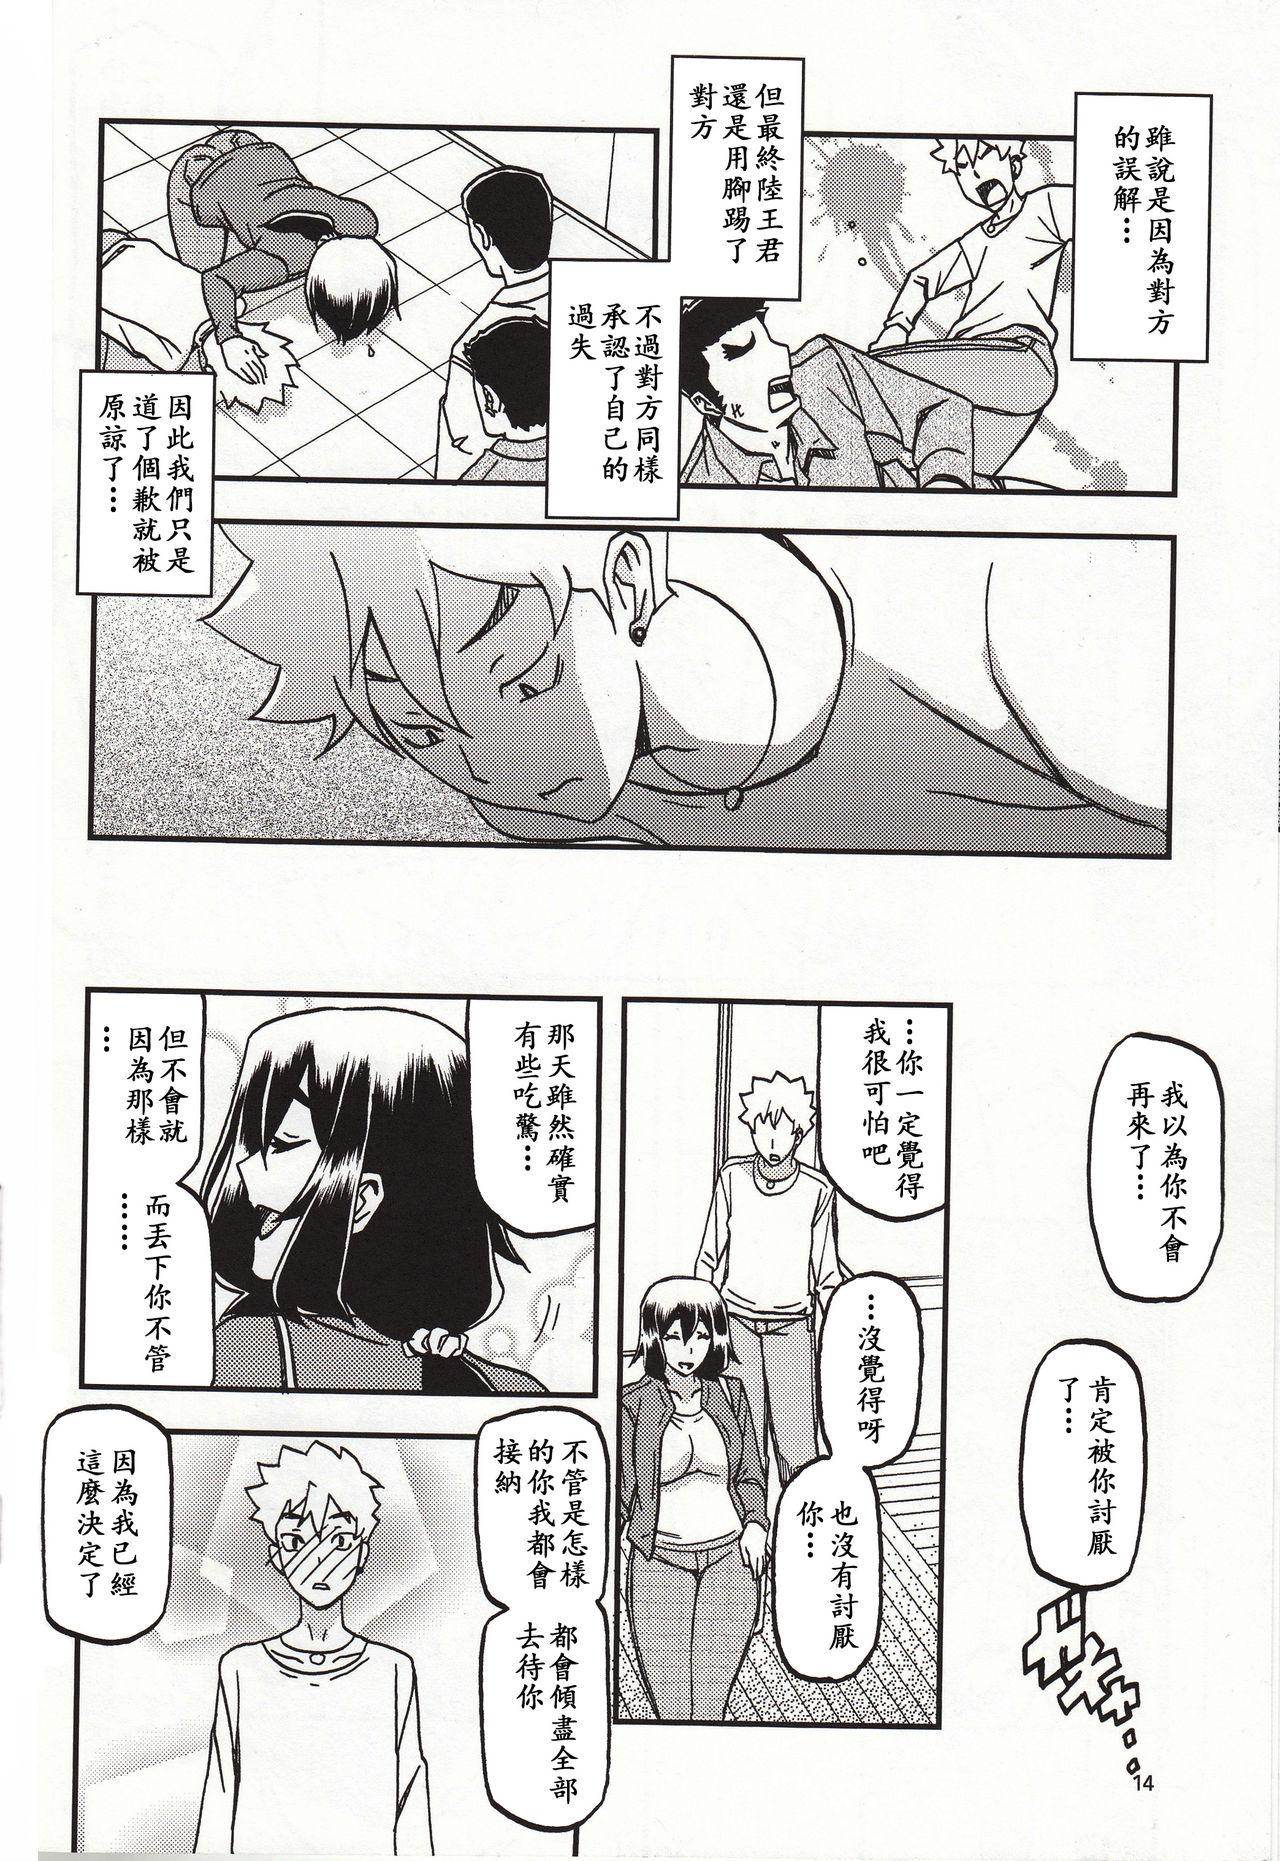 Transex Akebi no Mi - Chizuru Katei - Akebi no mi 8teen - Page 13